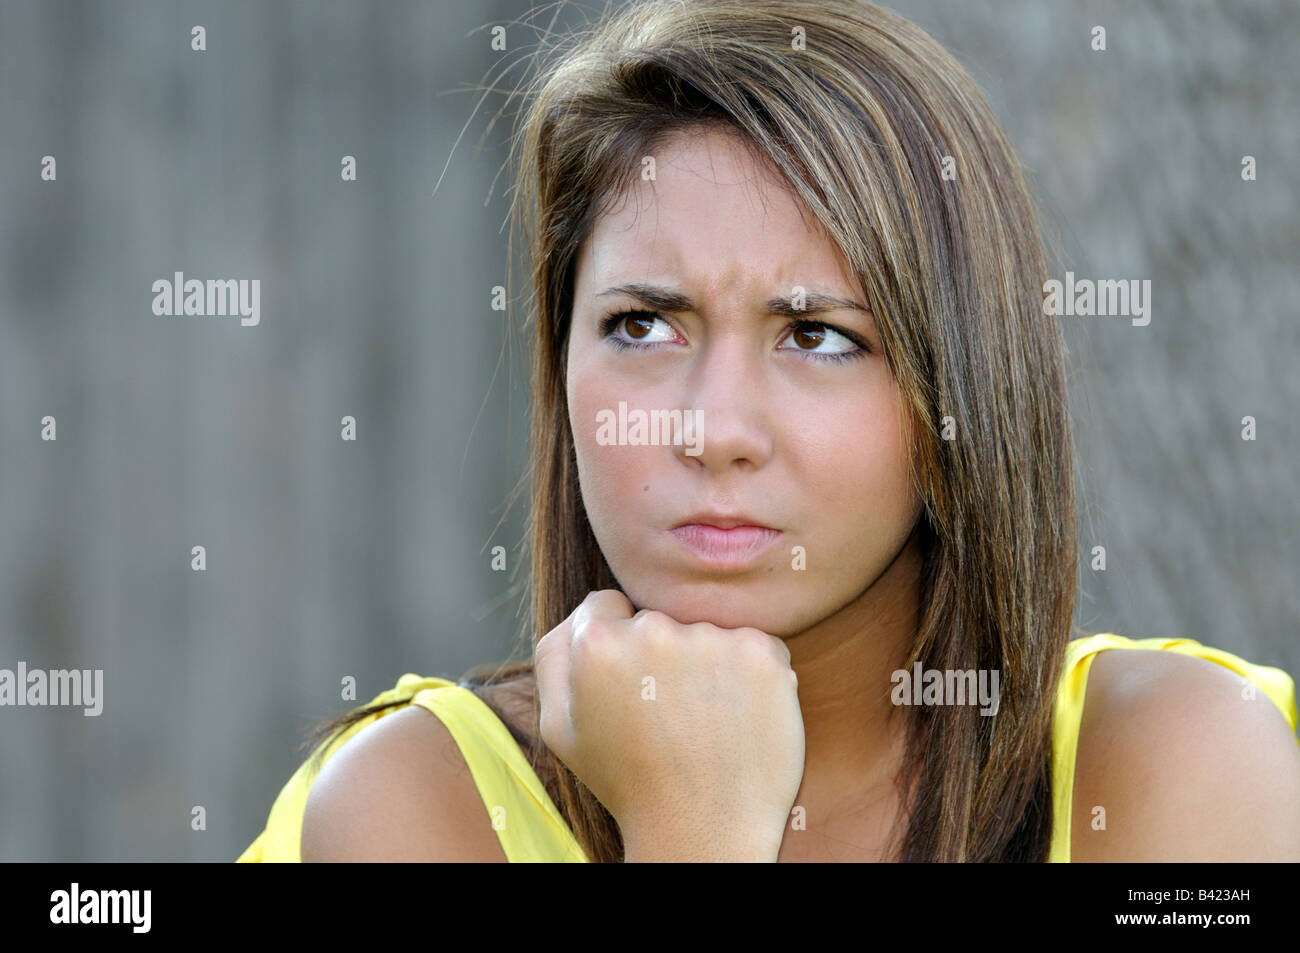 16 ans, jolie jeune fille de race blanche, cheveux bruns et yeux a une expression de colère sur son visage. Image conceptuelle. Banque D'Images